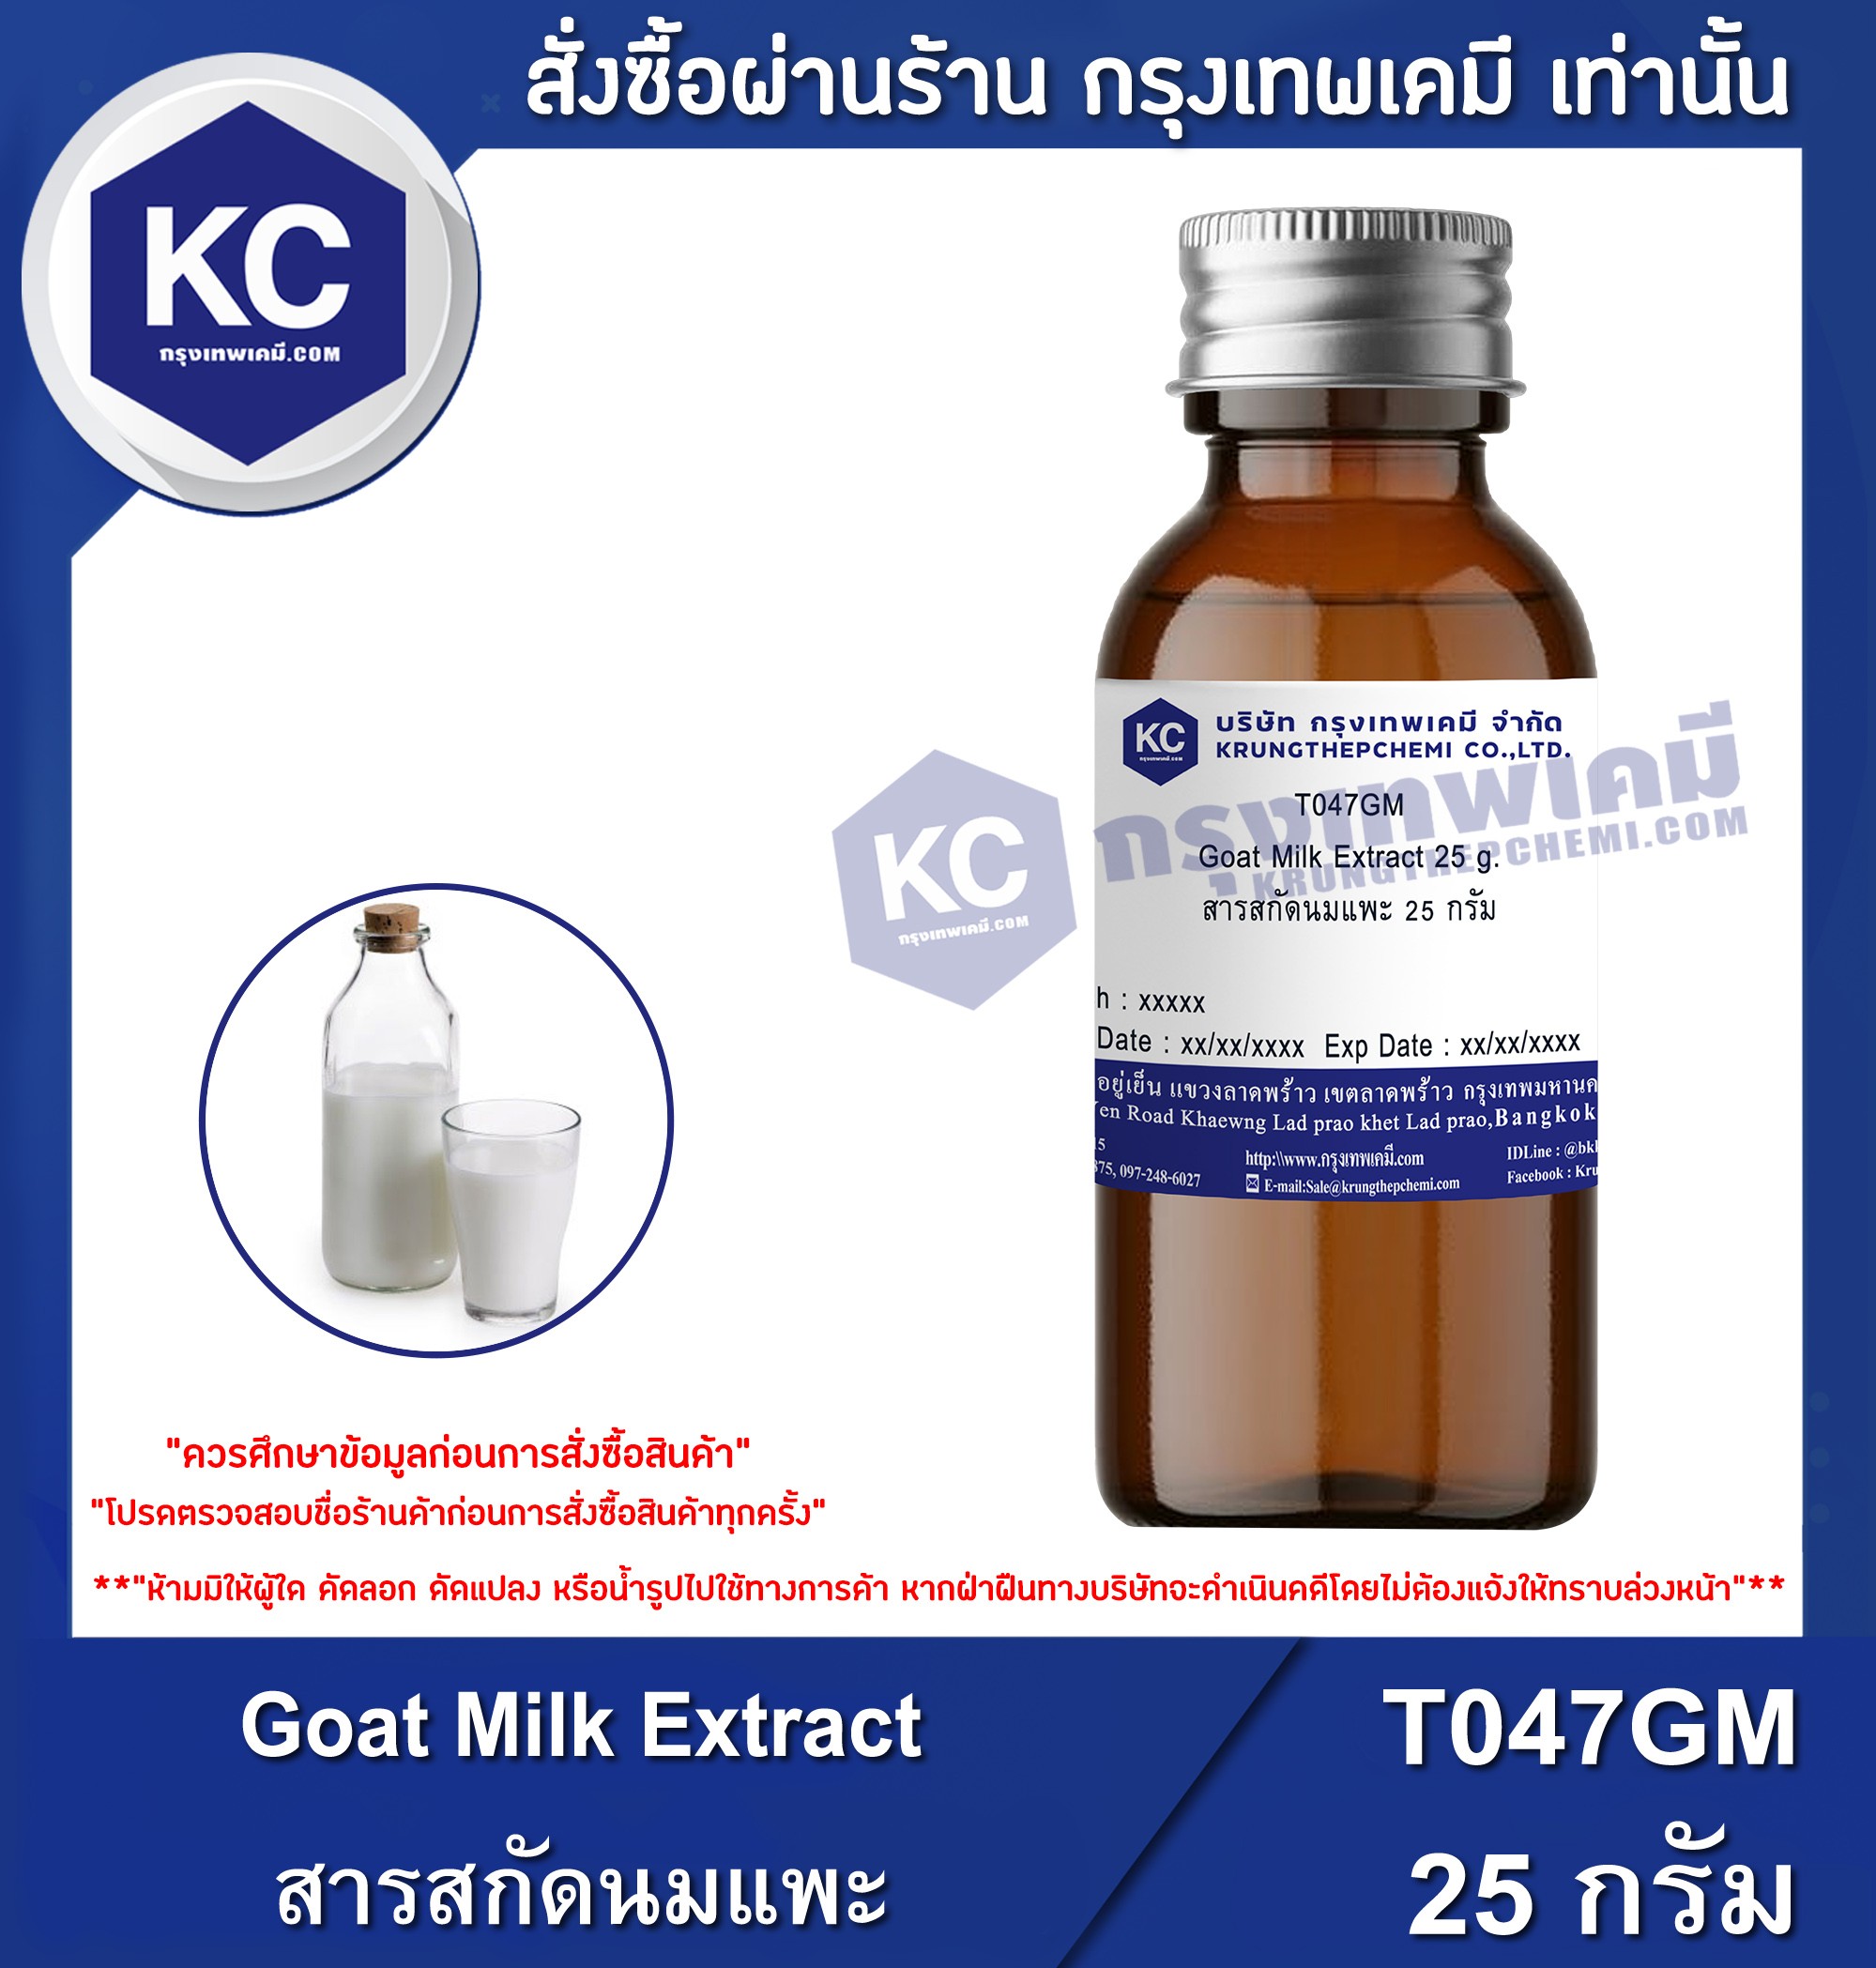 โปรโมชั่น Goat Milk Extract / สารสกัดนมแพะ (Cosmatic grade) (T047GM)